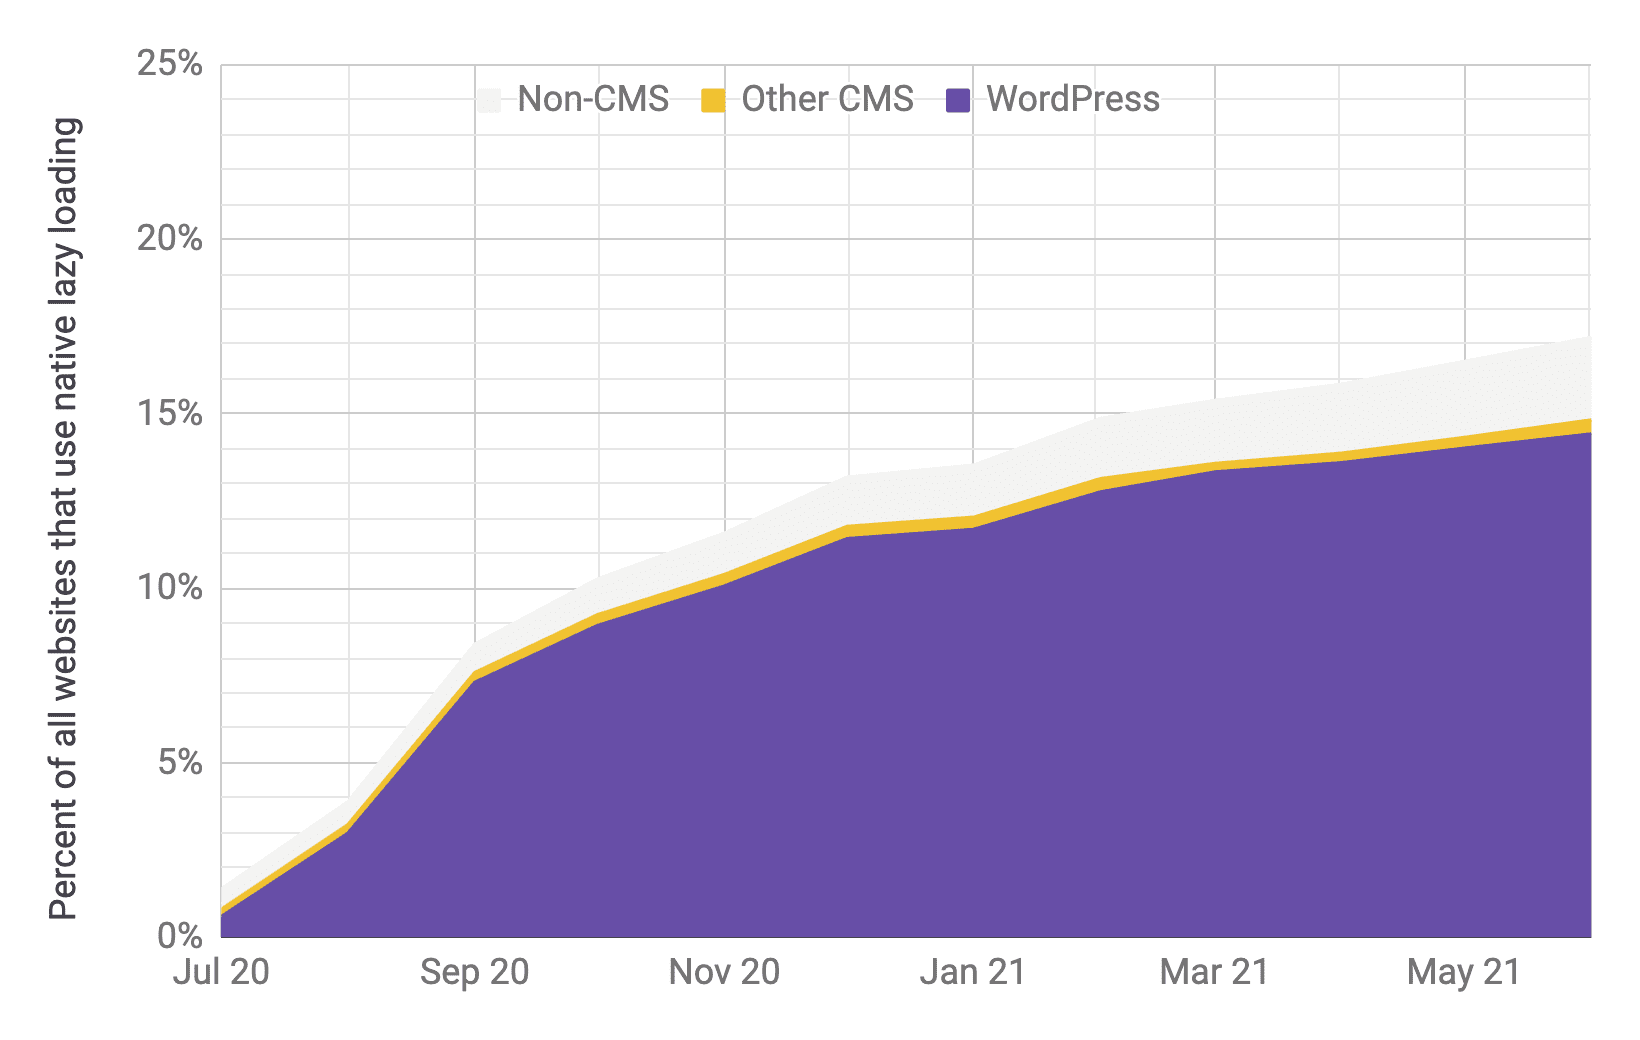 תרשים Timeseries של אימוץ טעינה מדורגת, כאשר WordPress היה השחקן העיקרי בהשוואה למערכות ניהול תוכן אחרות ולמערכות אחרות שאינן מערכות ניהול תוכן, עם יחס דומה לזה שבתרשים הקודם. נראה שהיקף השימוש הכולל עלה במהירות מ-1% ל-17% מיולי 2020 עד יוני 2021.